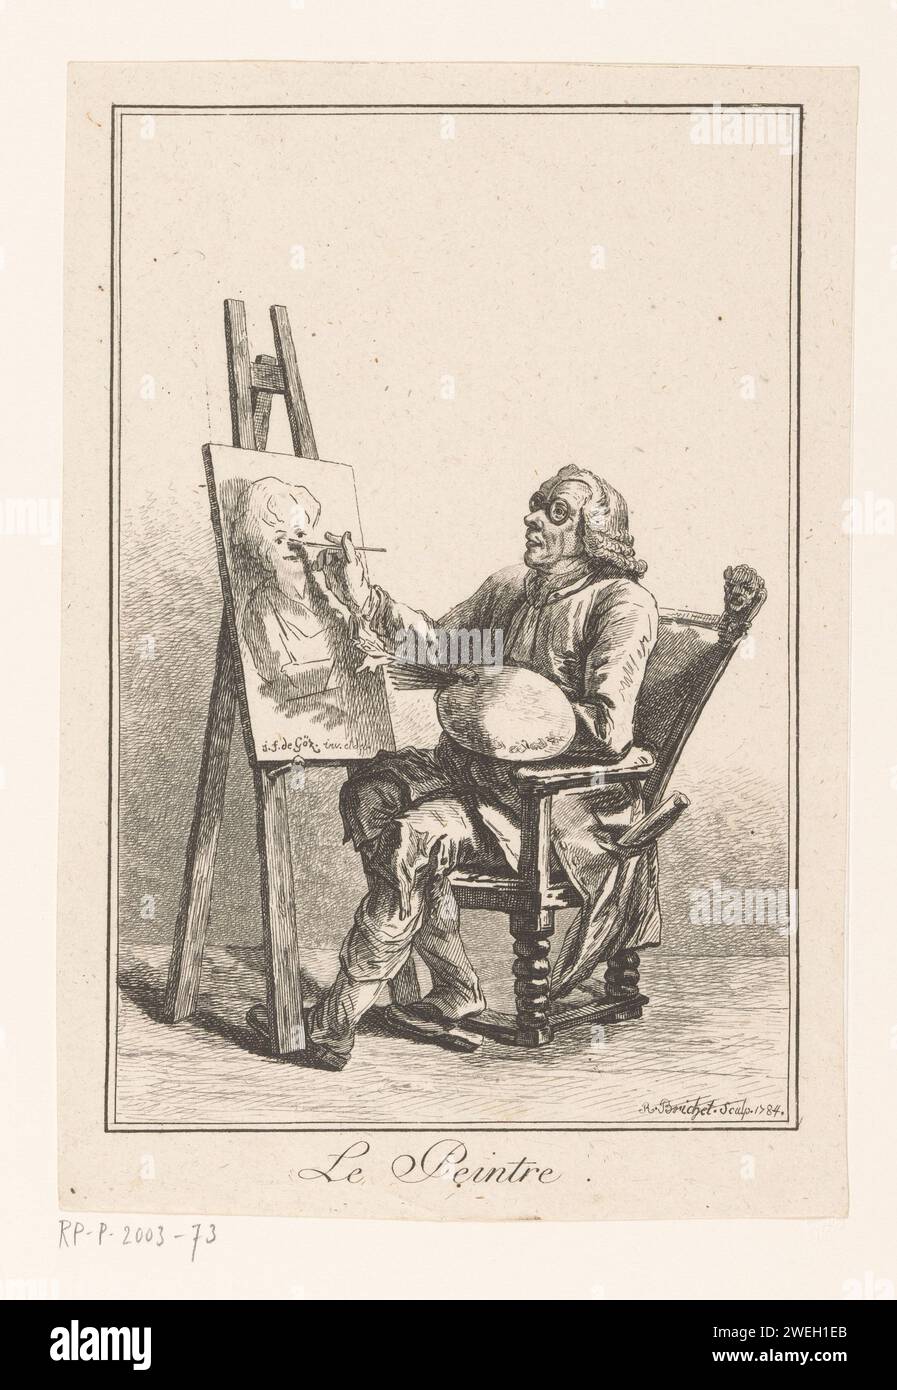 Maler sitzend auf einem Stuhl hinter seinem Esel, Robert Brichet, nach Joseph Franz Freiherr von Goez, 1784 Druck Malerei mit Brille, sitzend hinter einem Esel, mit seiner Palette in der linken Hand. Er arbeitet am Porträt einer Frau. Papierätzmaler bei der Arbeit, in seinem Atelier. Brillen, Brillen. Staffelei Stockfoto